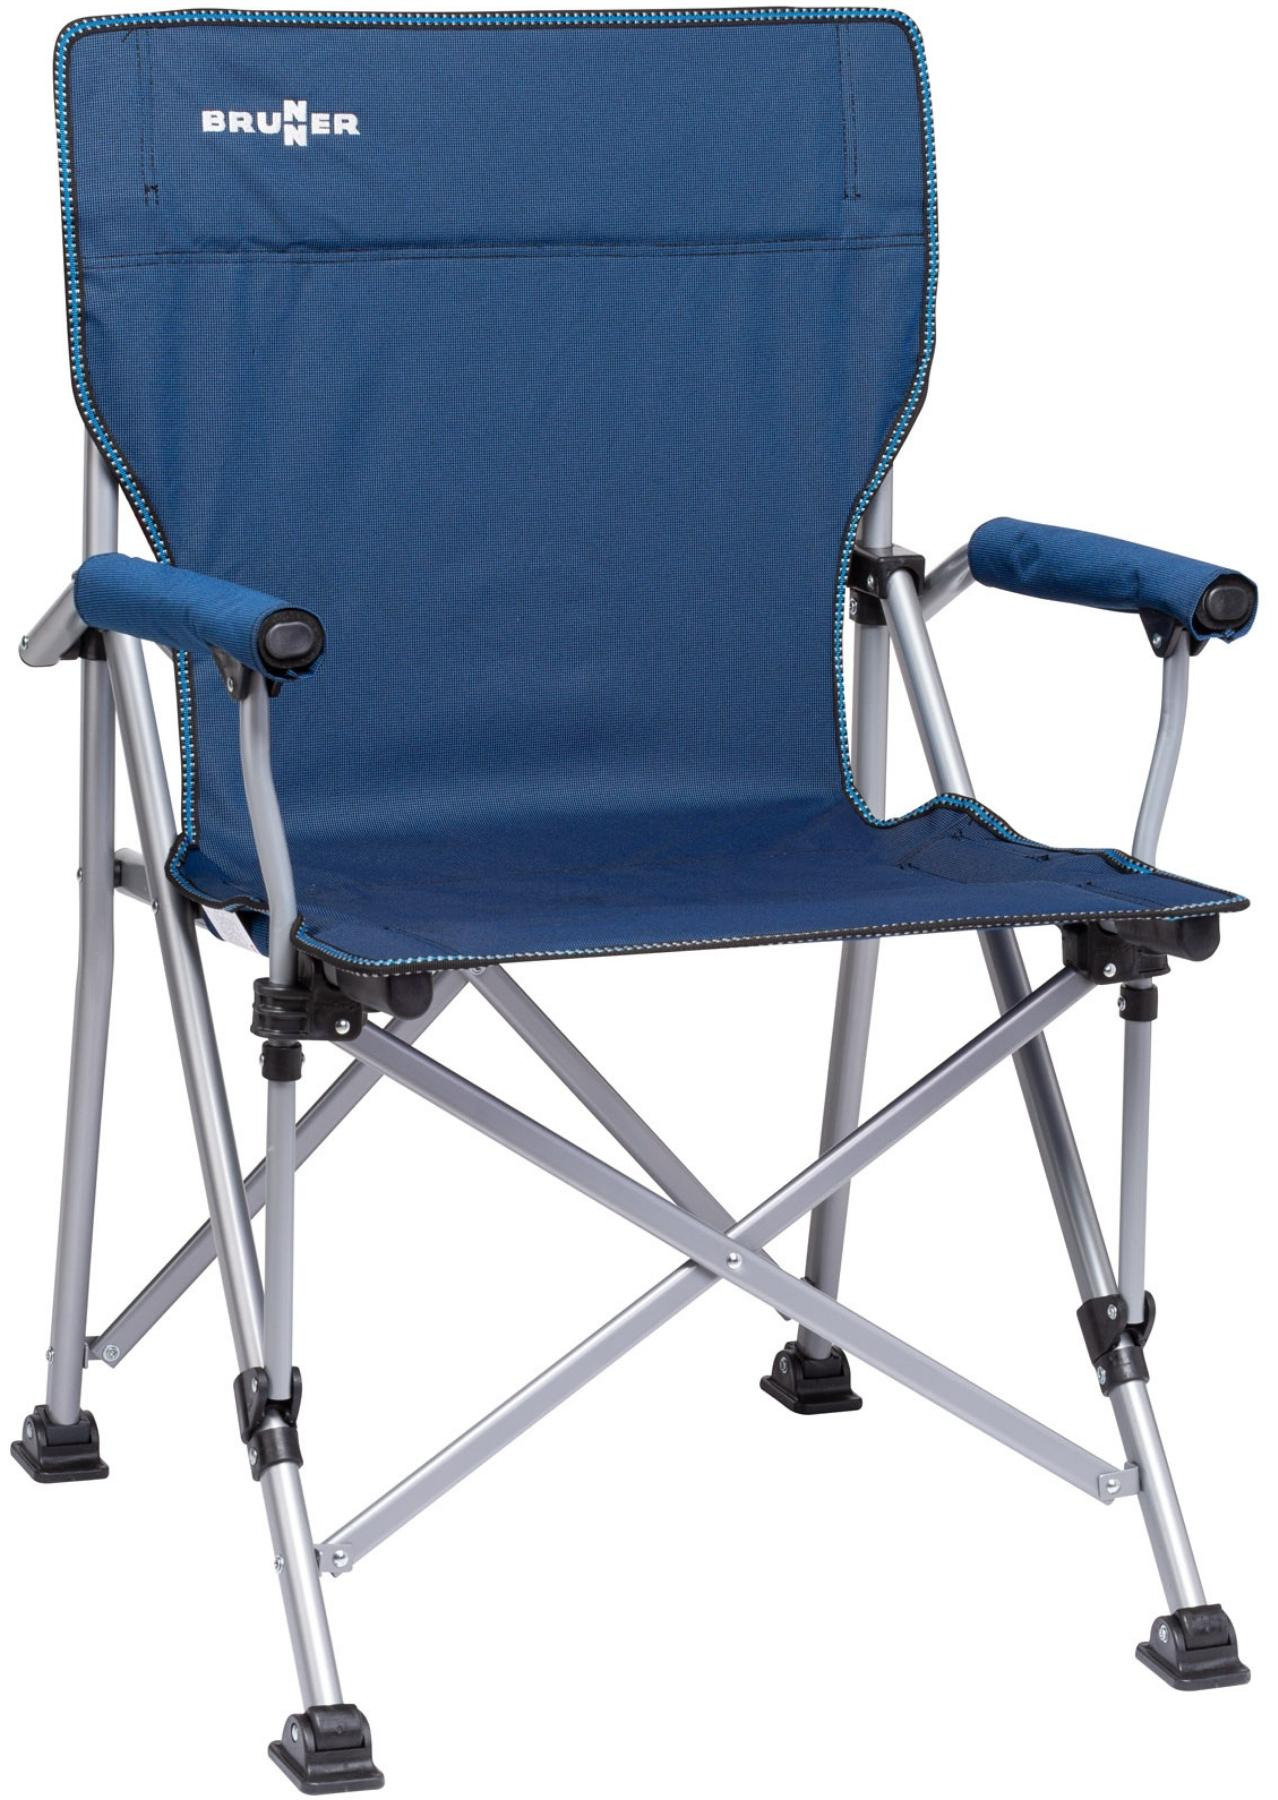 BRUNNER RAPTOR classica sedia pieghevole da campeggio & Borsa imbottita braccioli blu 